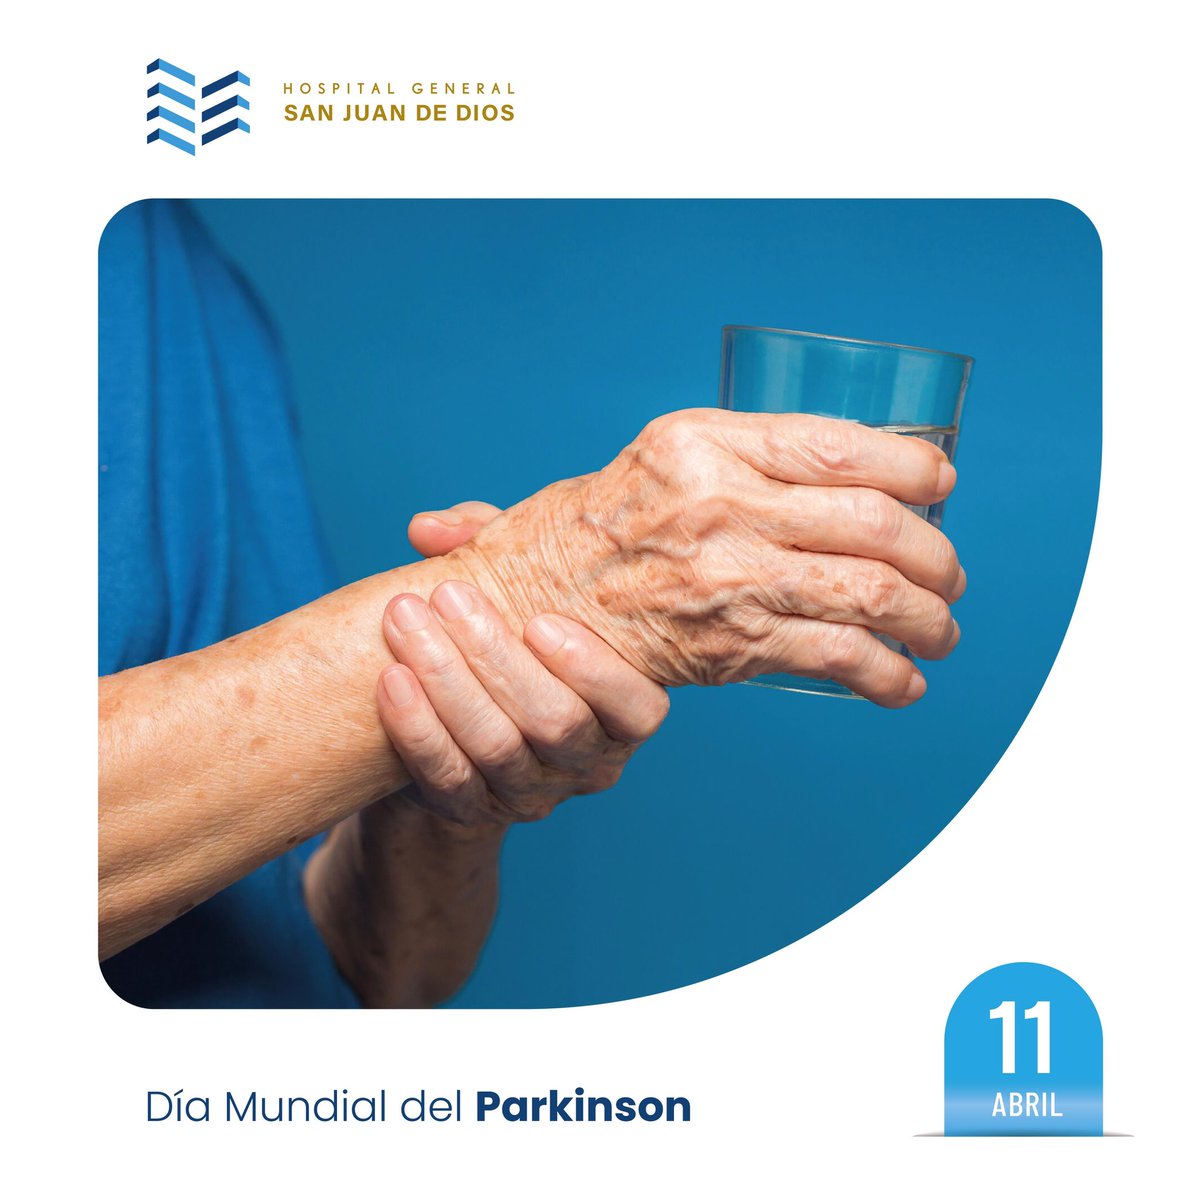 Día Mundial del Parkinson El Parkinson es una afección degenerativa del cerebro que afecta a las estructuras encargadas del control y movimiento. En Hospigen nos preocupamos por la salud de nuestros pacientes. #Parkison #DíaMundialDelParkinson #Neurología